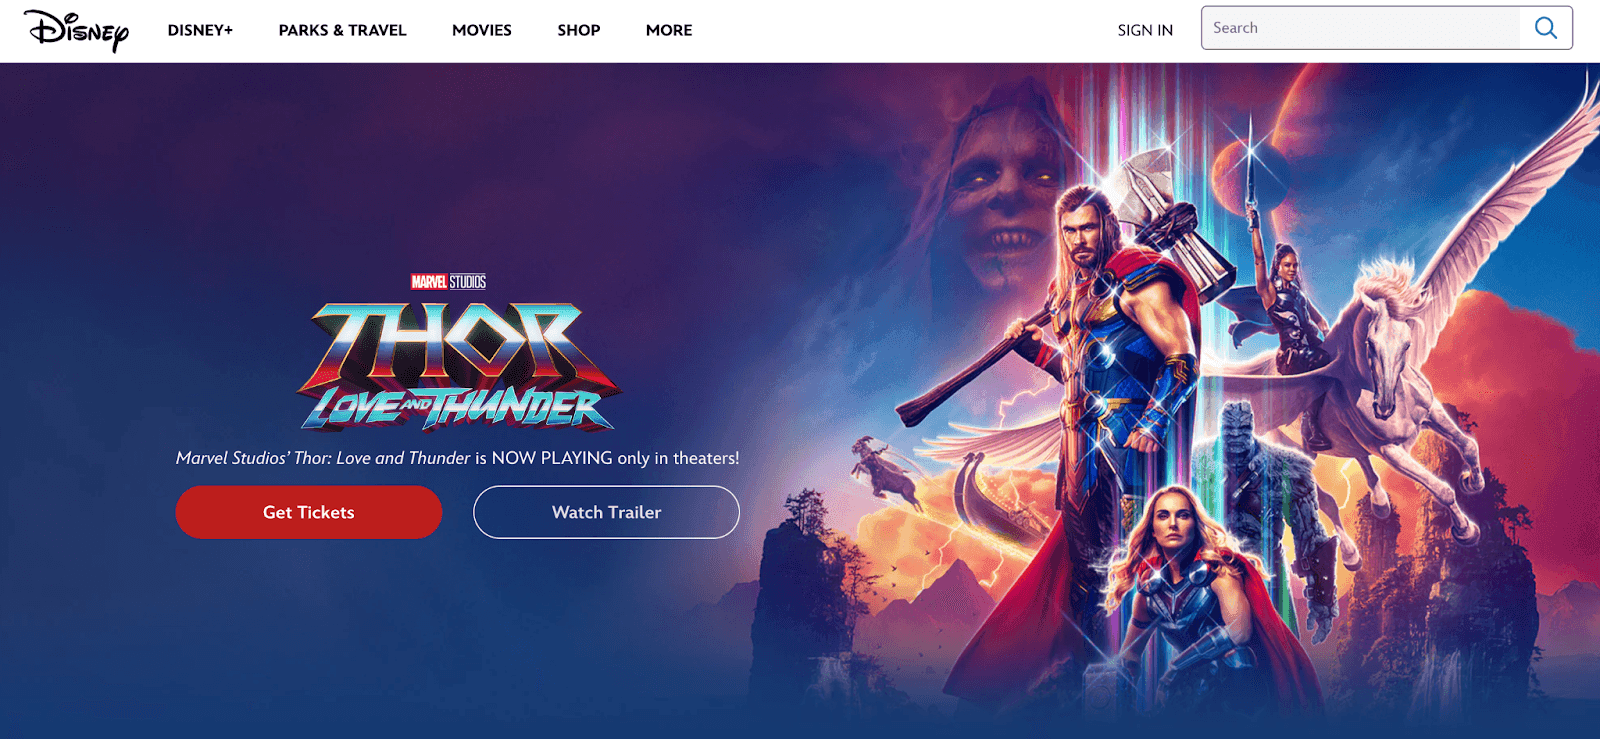 Disney page regarding the new Thor movie